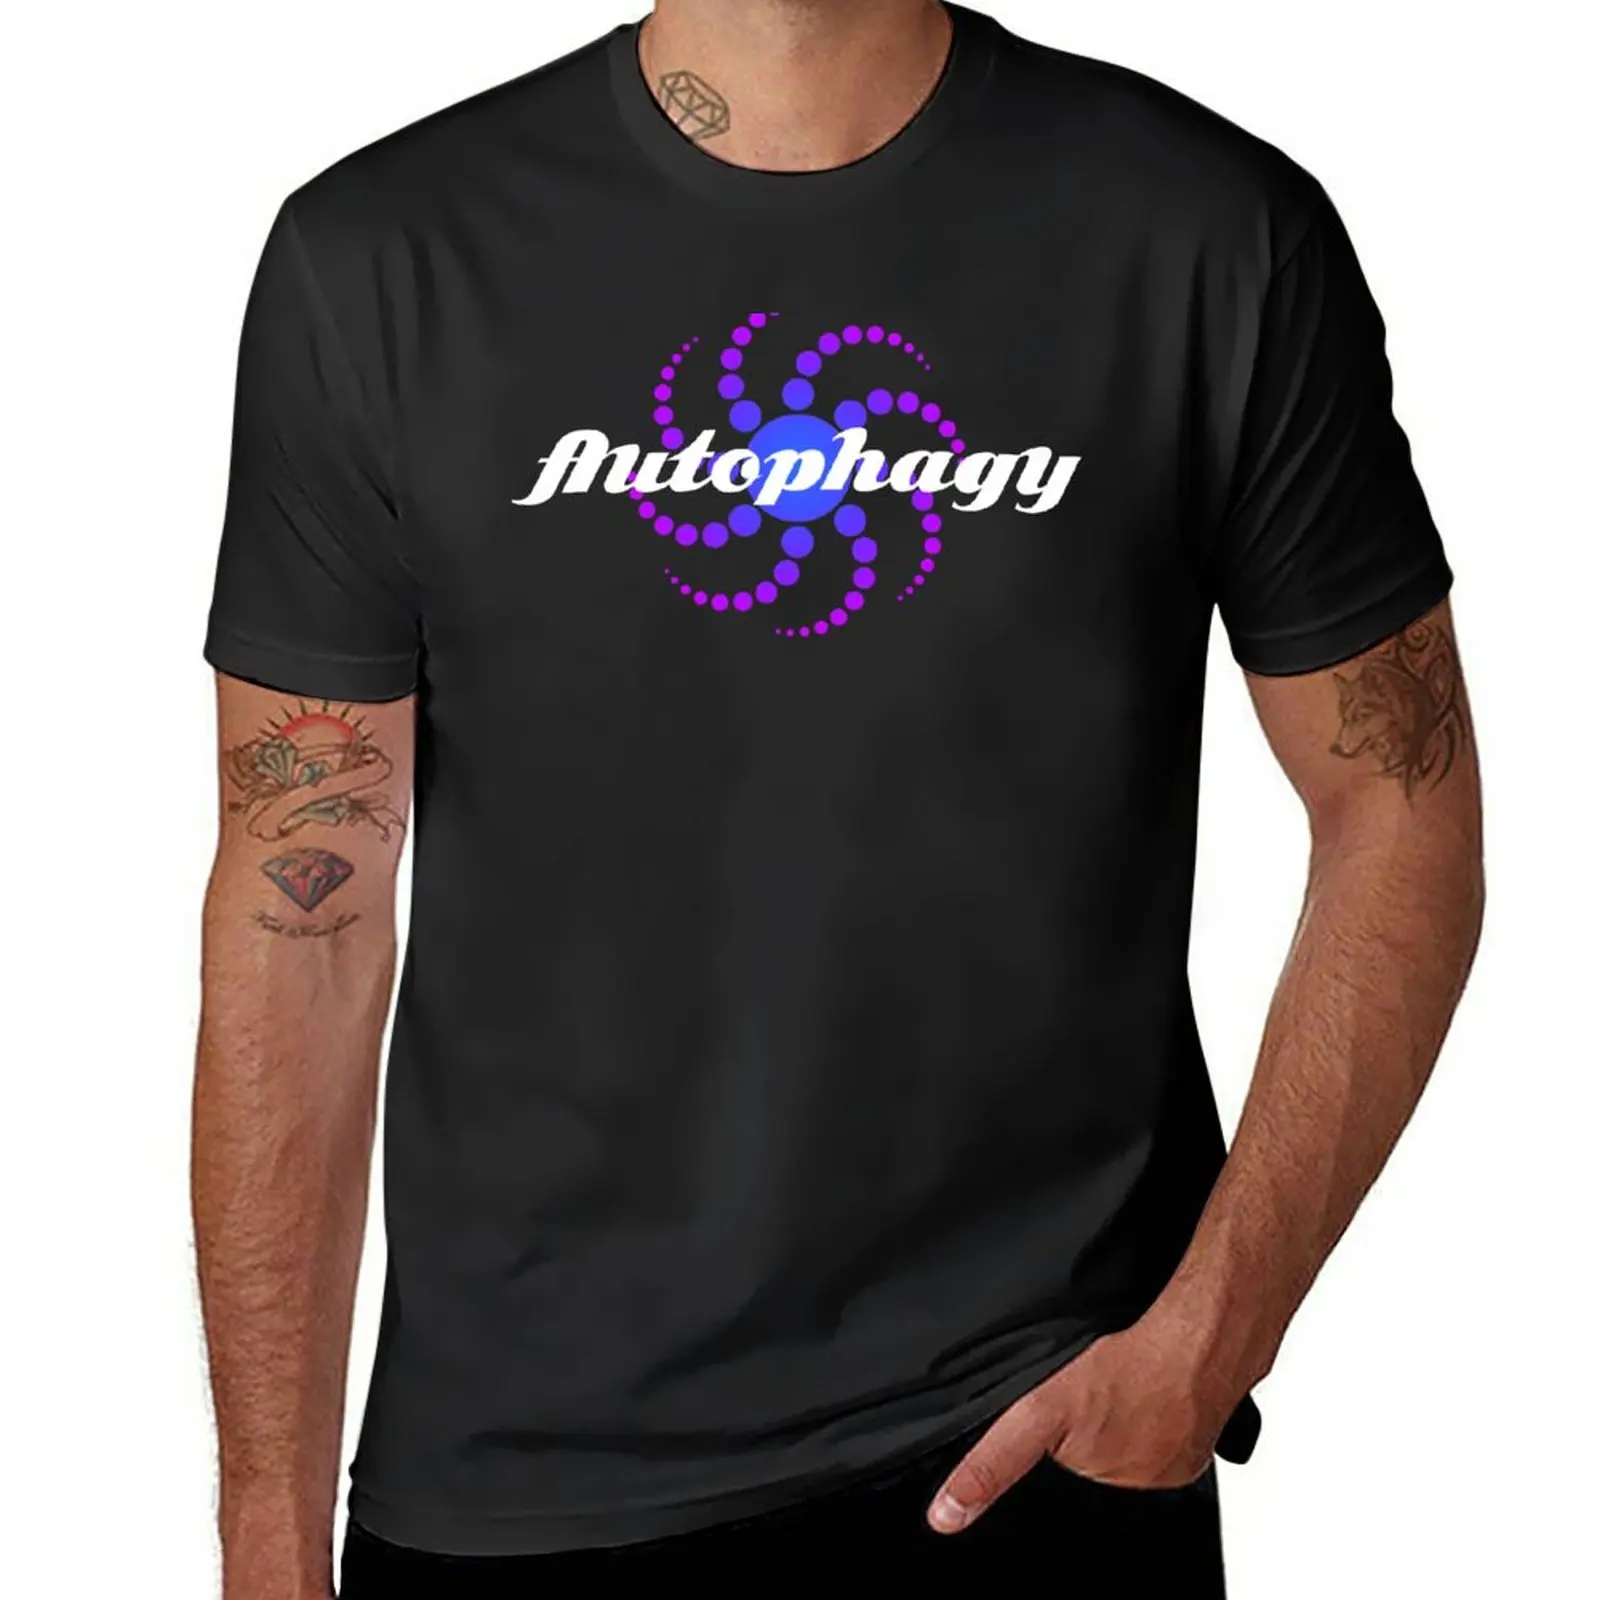 

Новая автофагия-это слово, которое вы услышали. Тяжелая футболка, футболки, индивидуальные футболки, простые мужские футболки